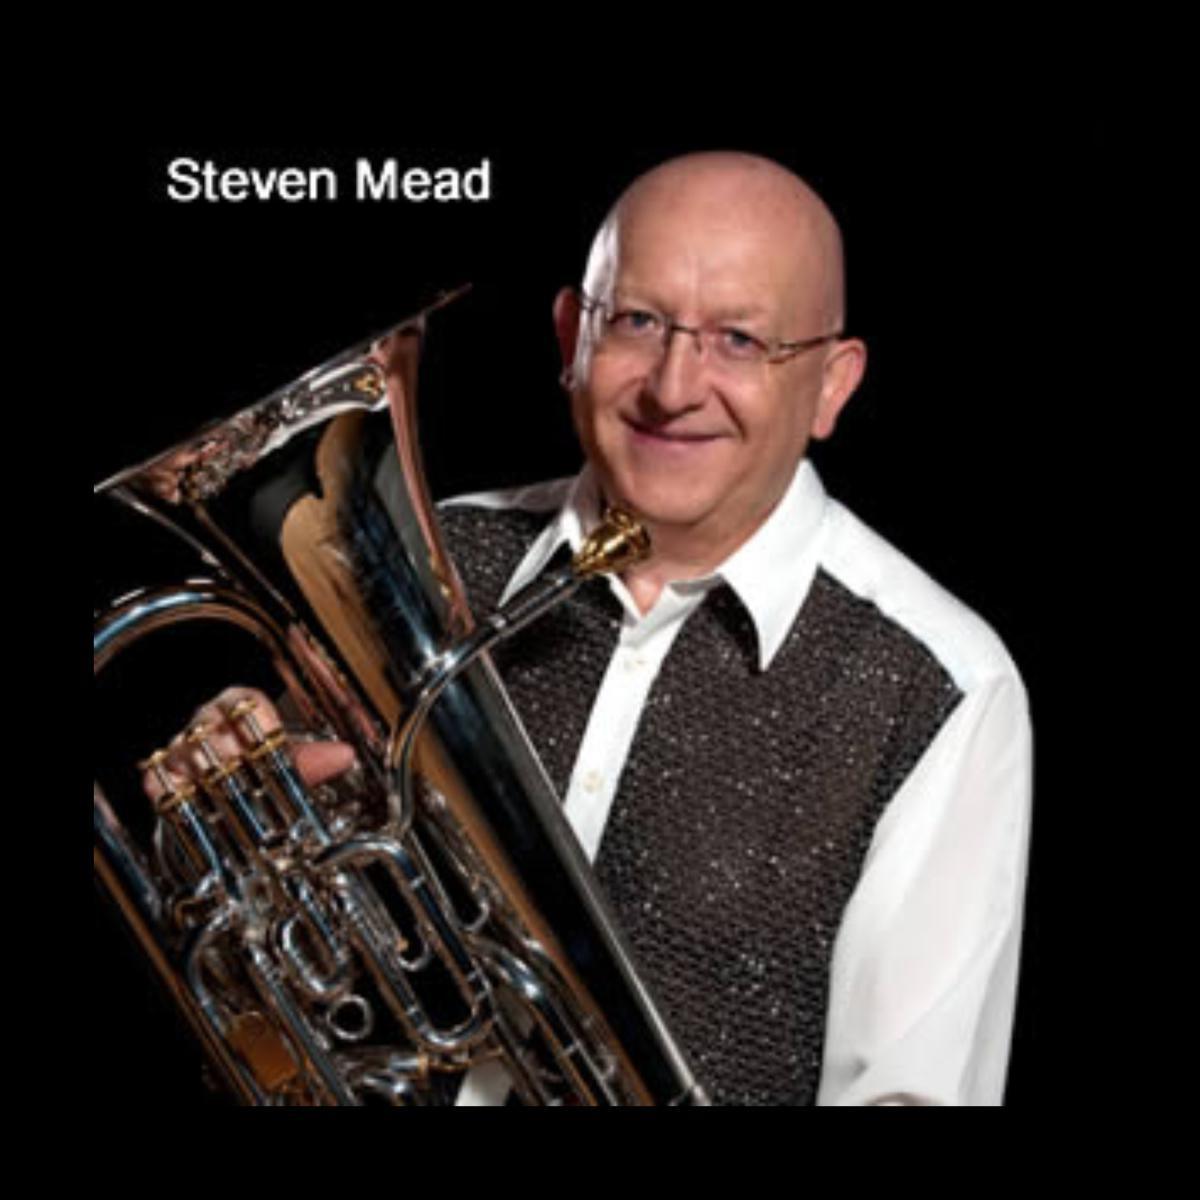 Steven Mead